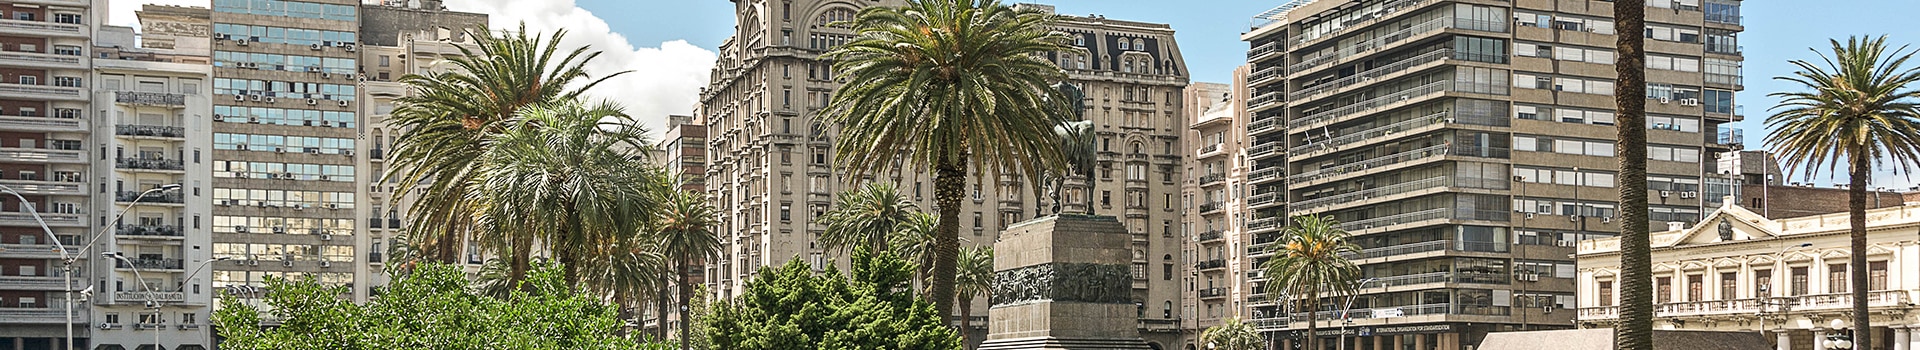 Mallorca - Montevideo